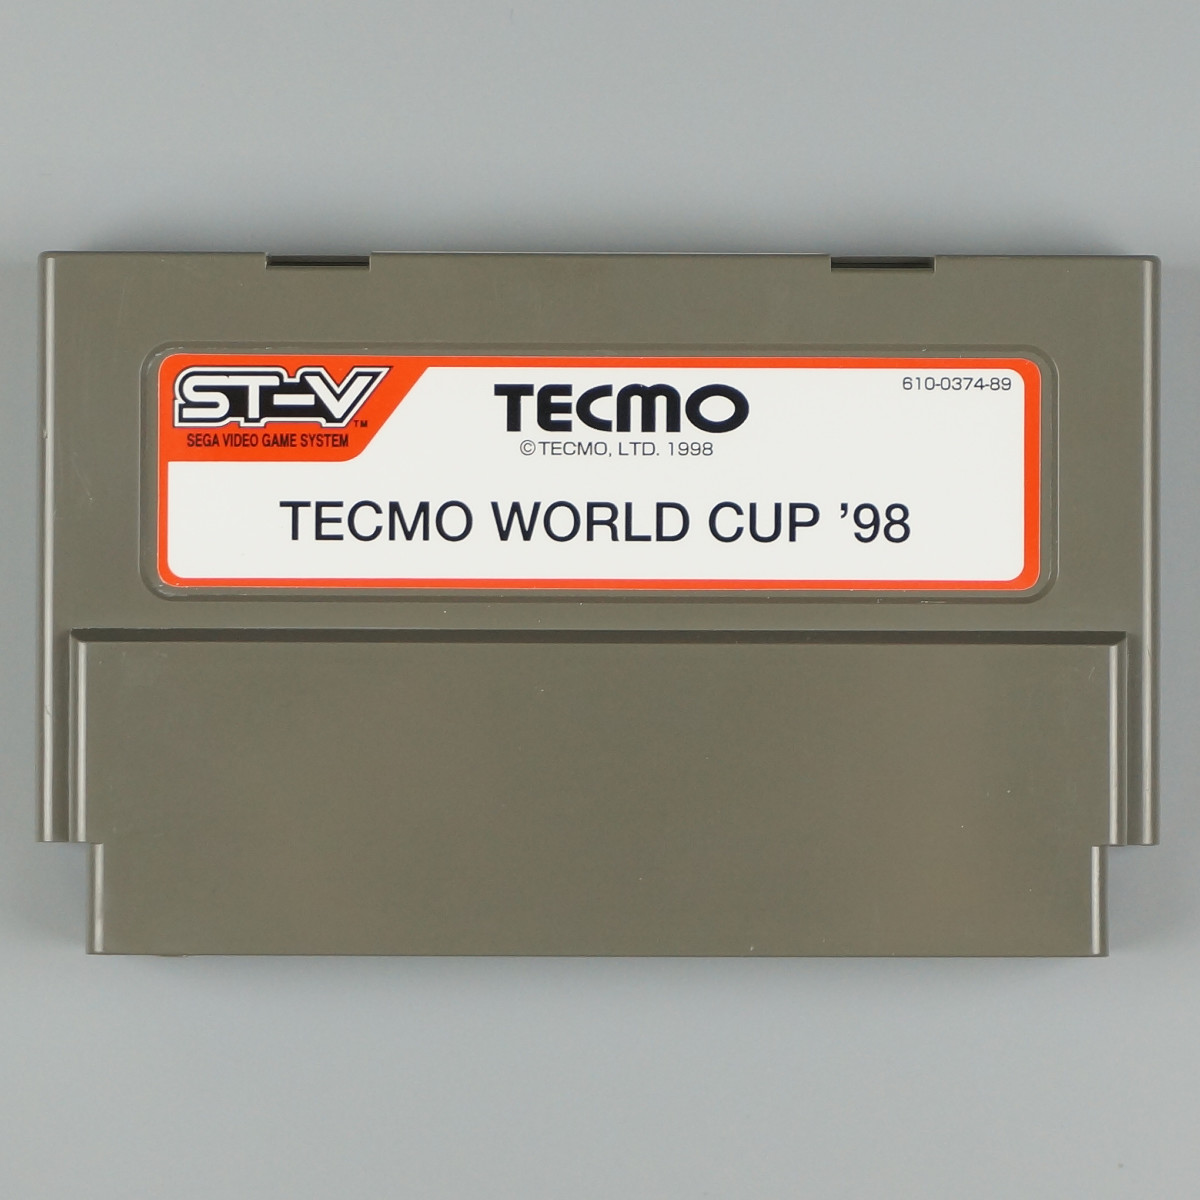 テクモワールドカップ ’98